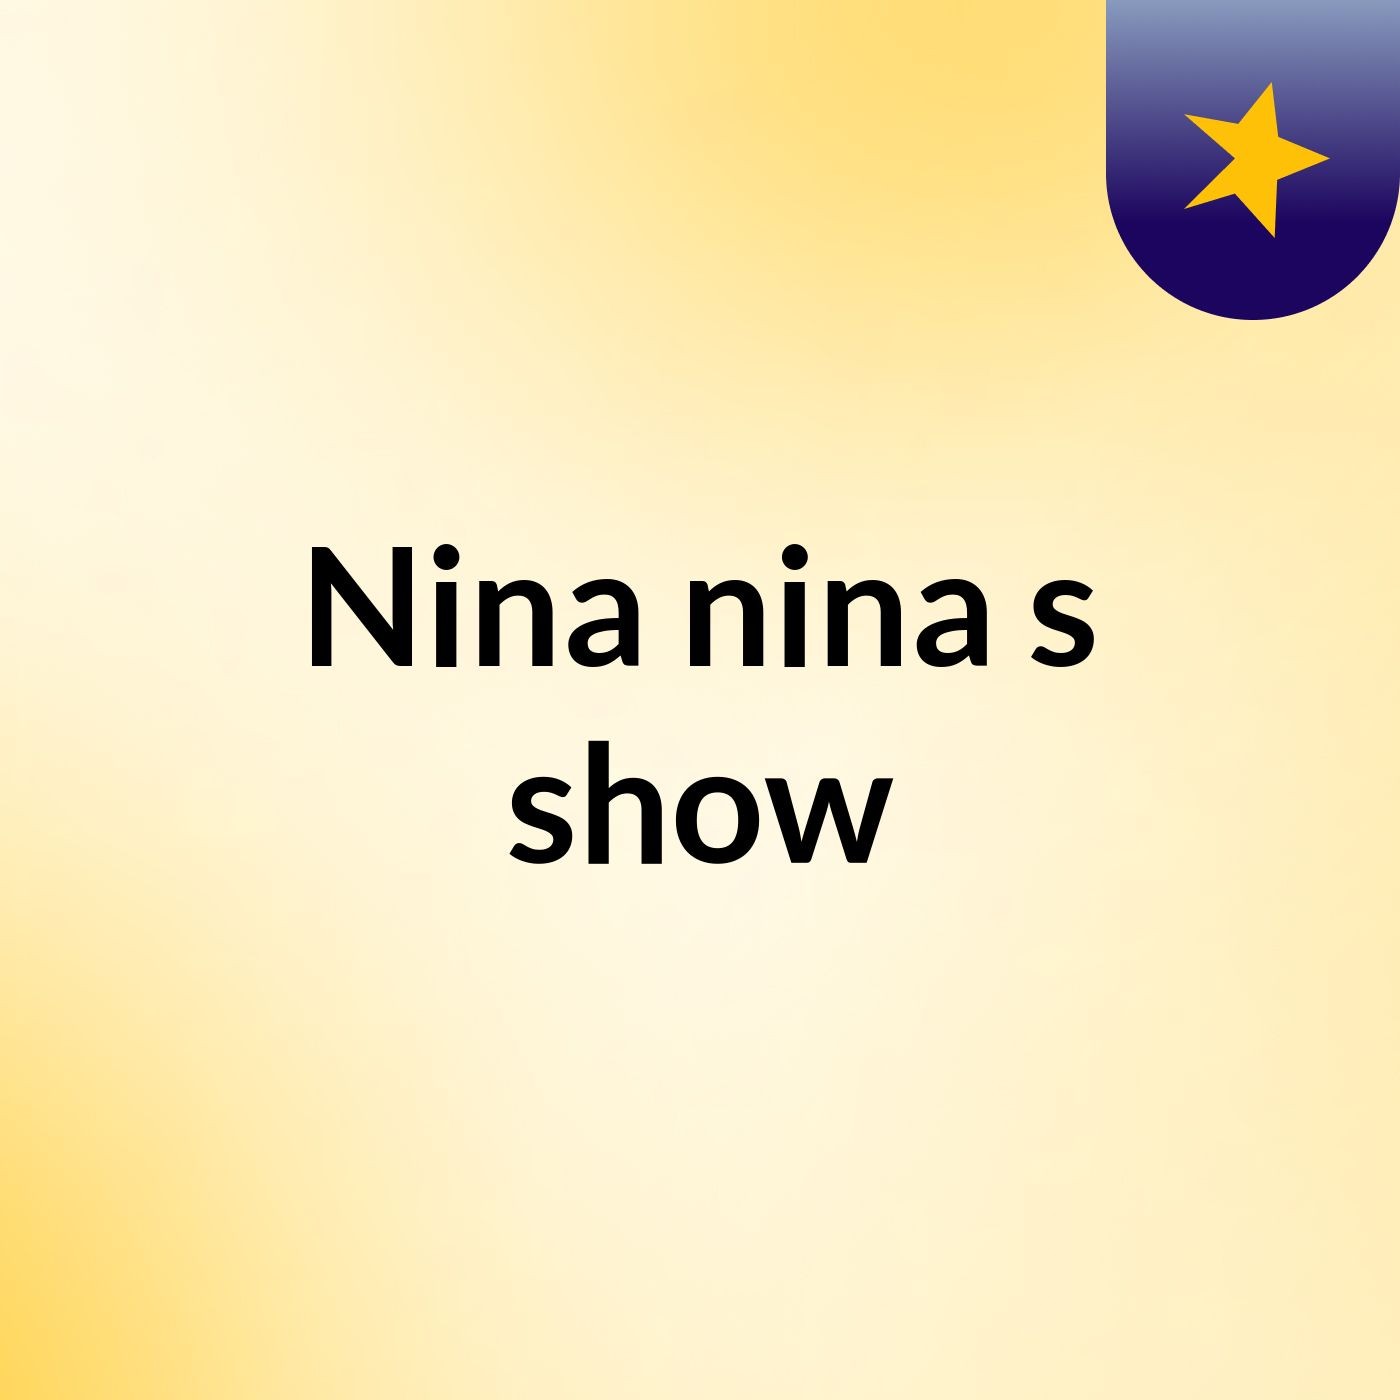 Nina nina's show